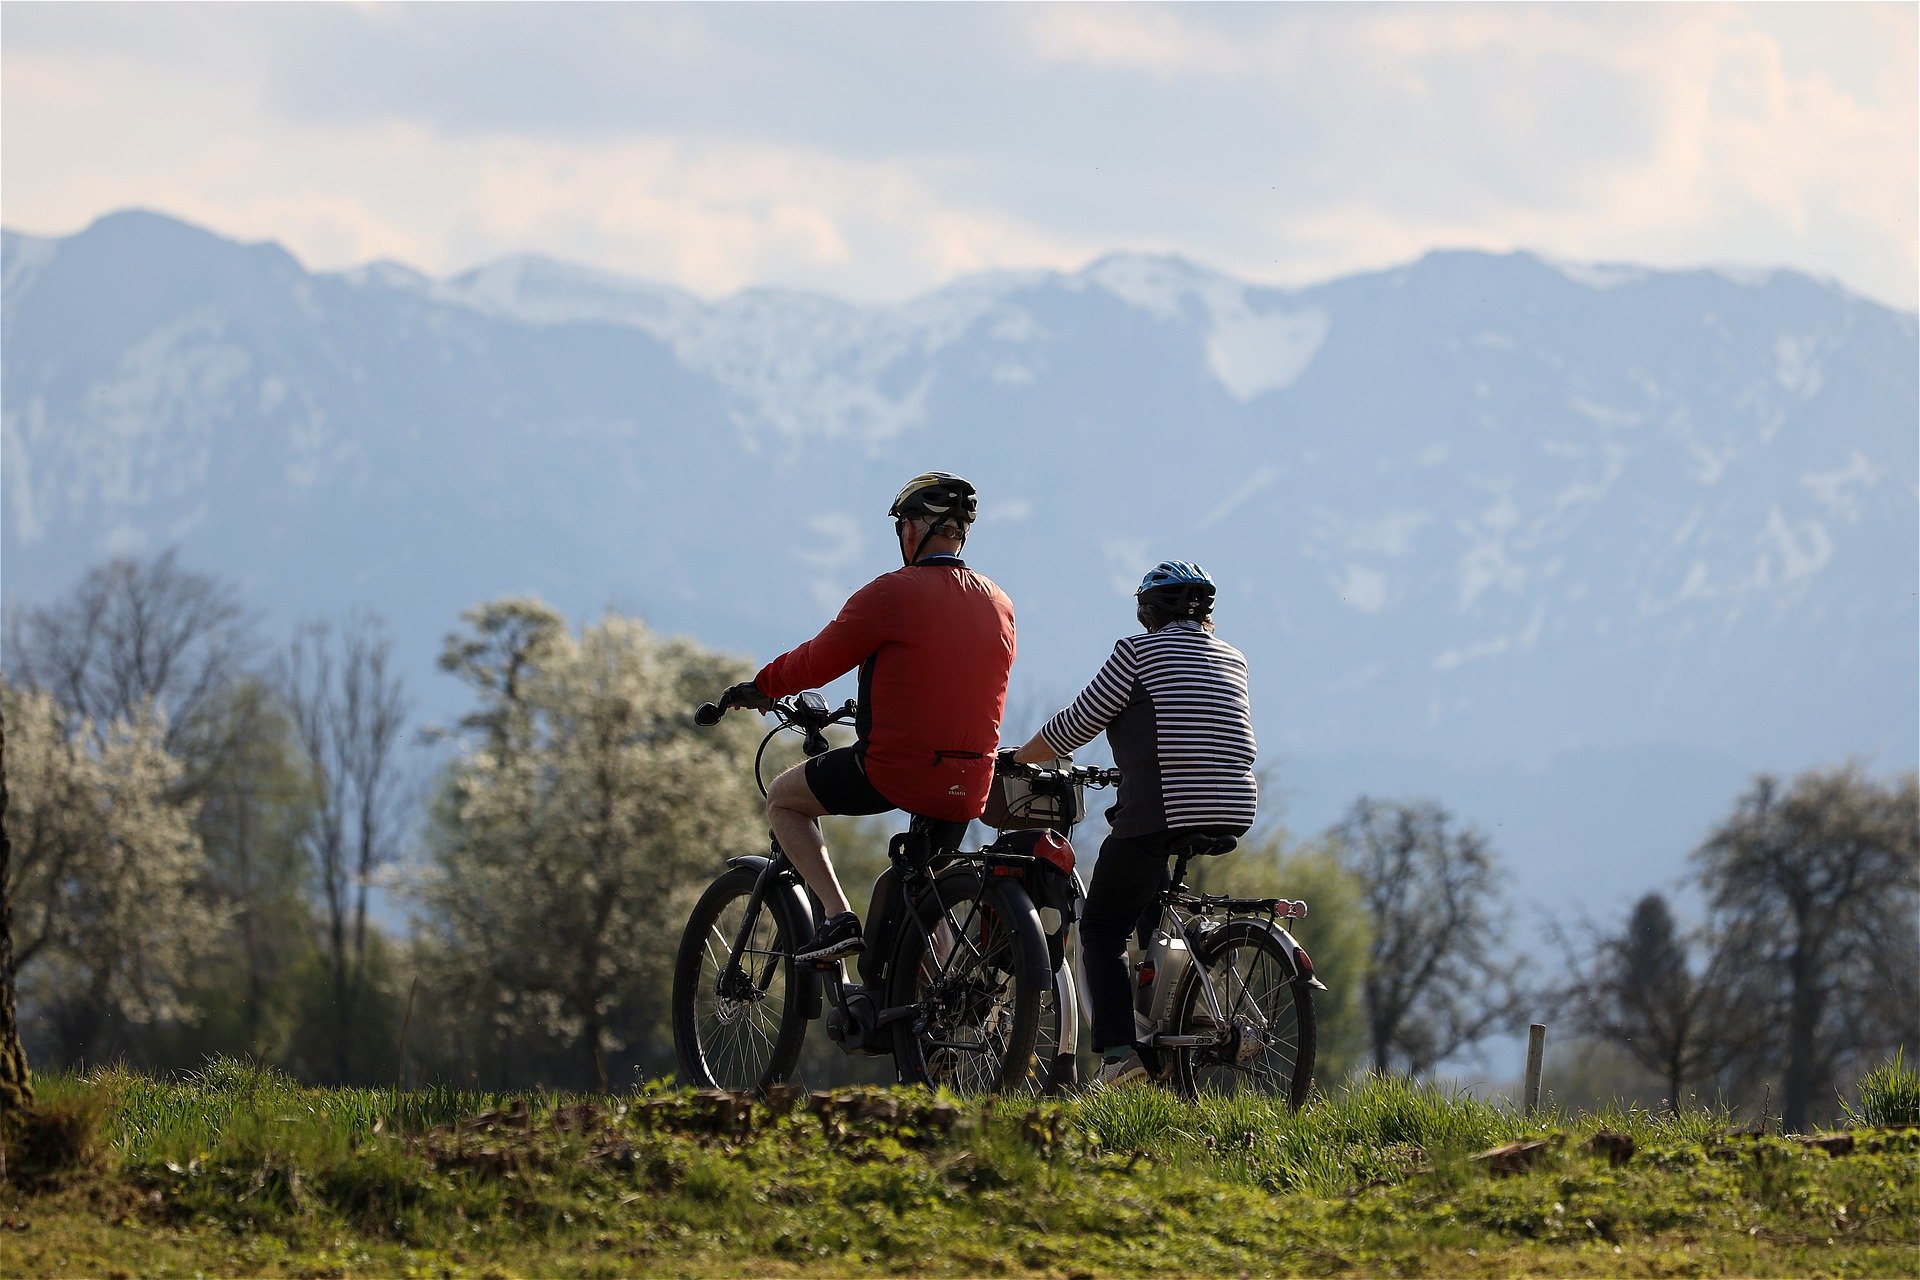 Ob Tourenrad oder Mountainbike, das E-Bike gibt es inzwischen in allen Varianten. Bildquelle: © Pixabay.com